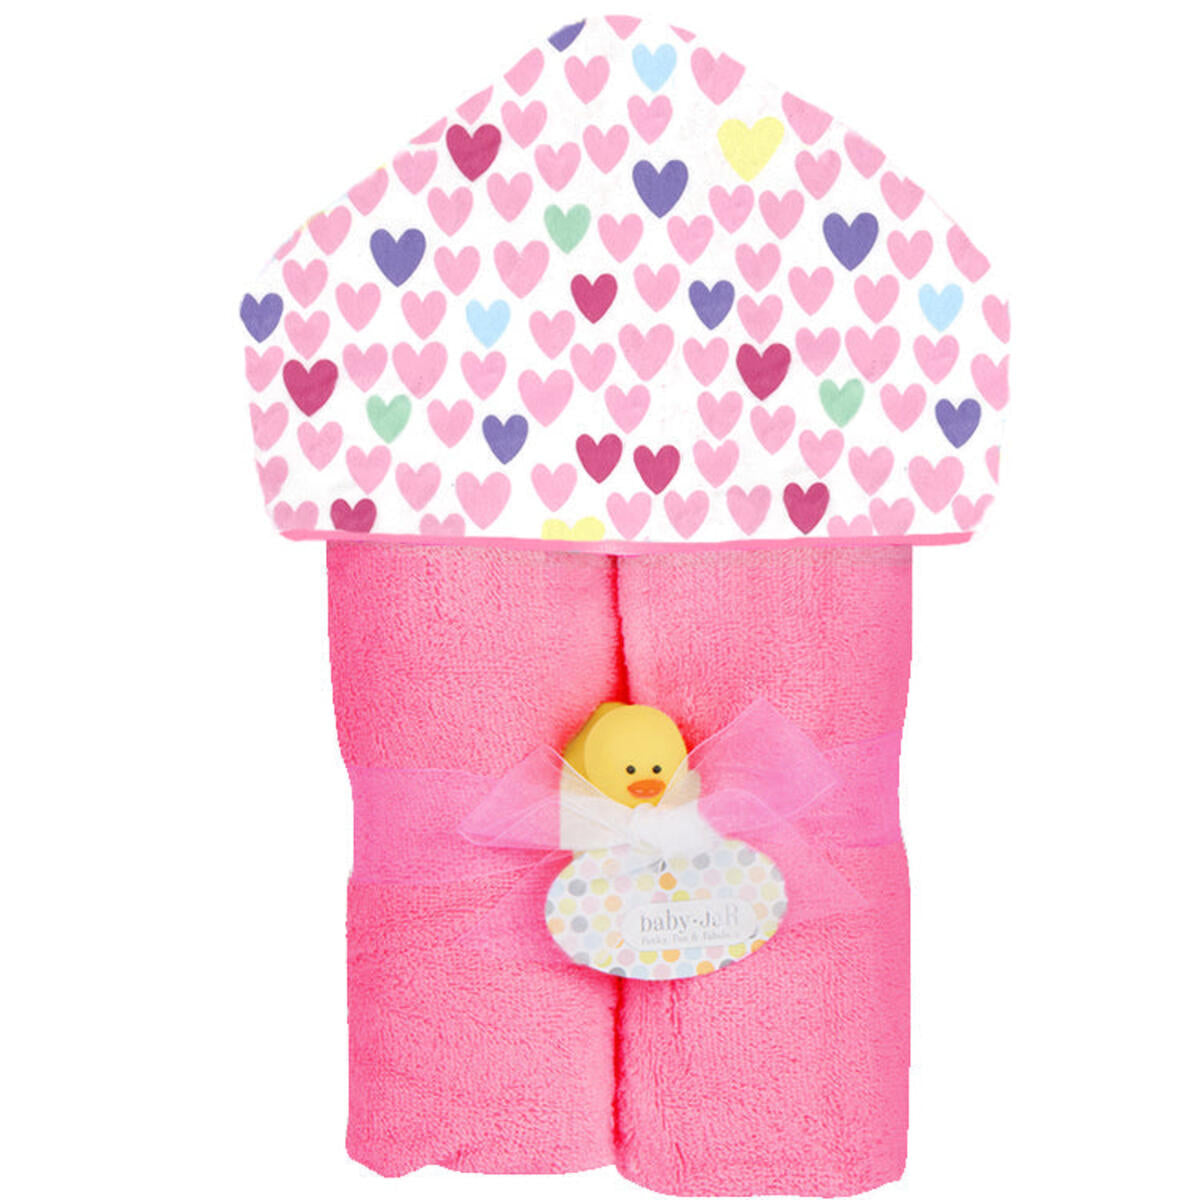 Lot's 'O Hearts Plush Deluxe Hooded Towel - Twinkle Twinkle Little One